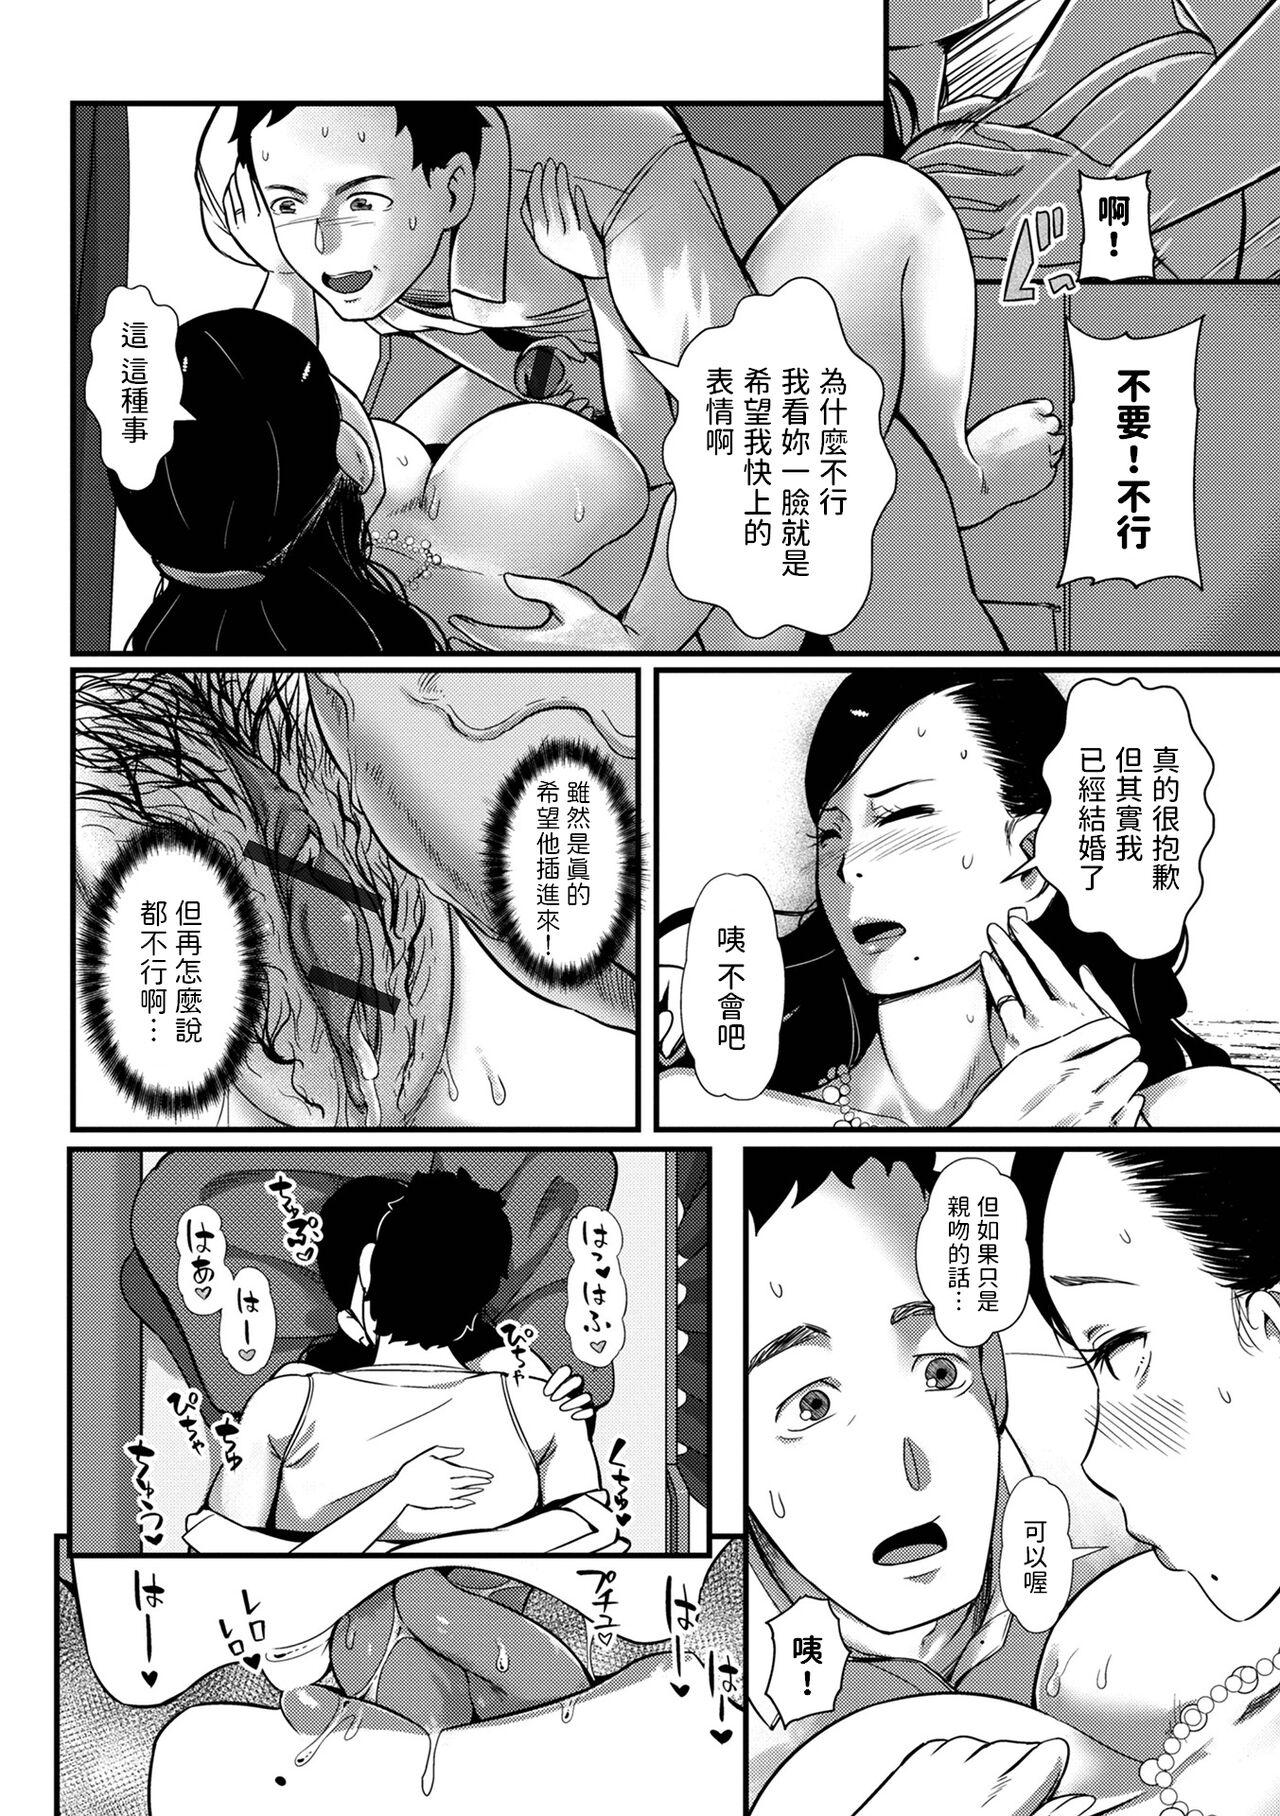 [YOSHITORA]  妻だけが居るはずの部屋  (コミック刺激的 SQUIRT！！ Vol.31)  中文翻譯 7